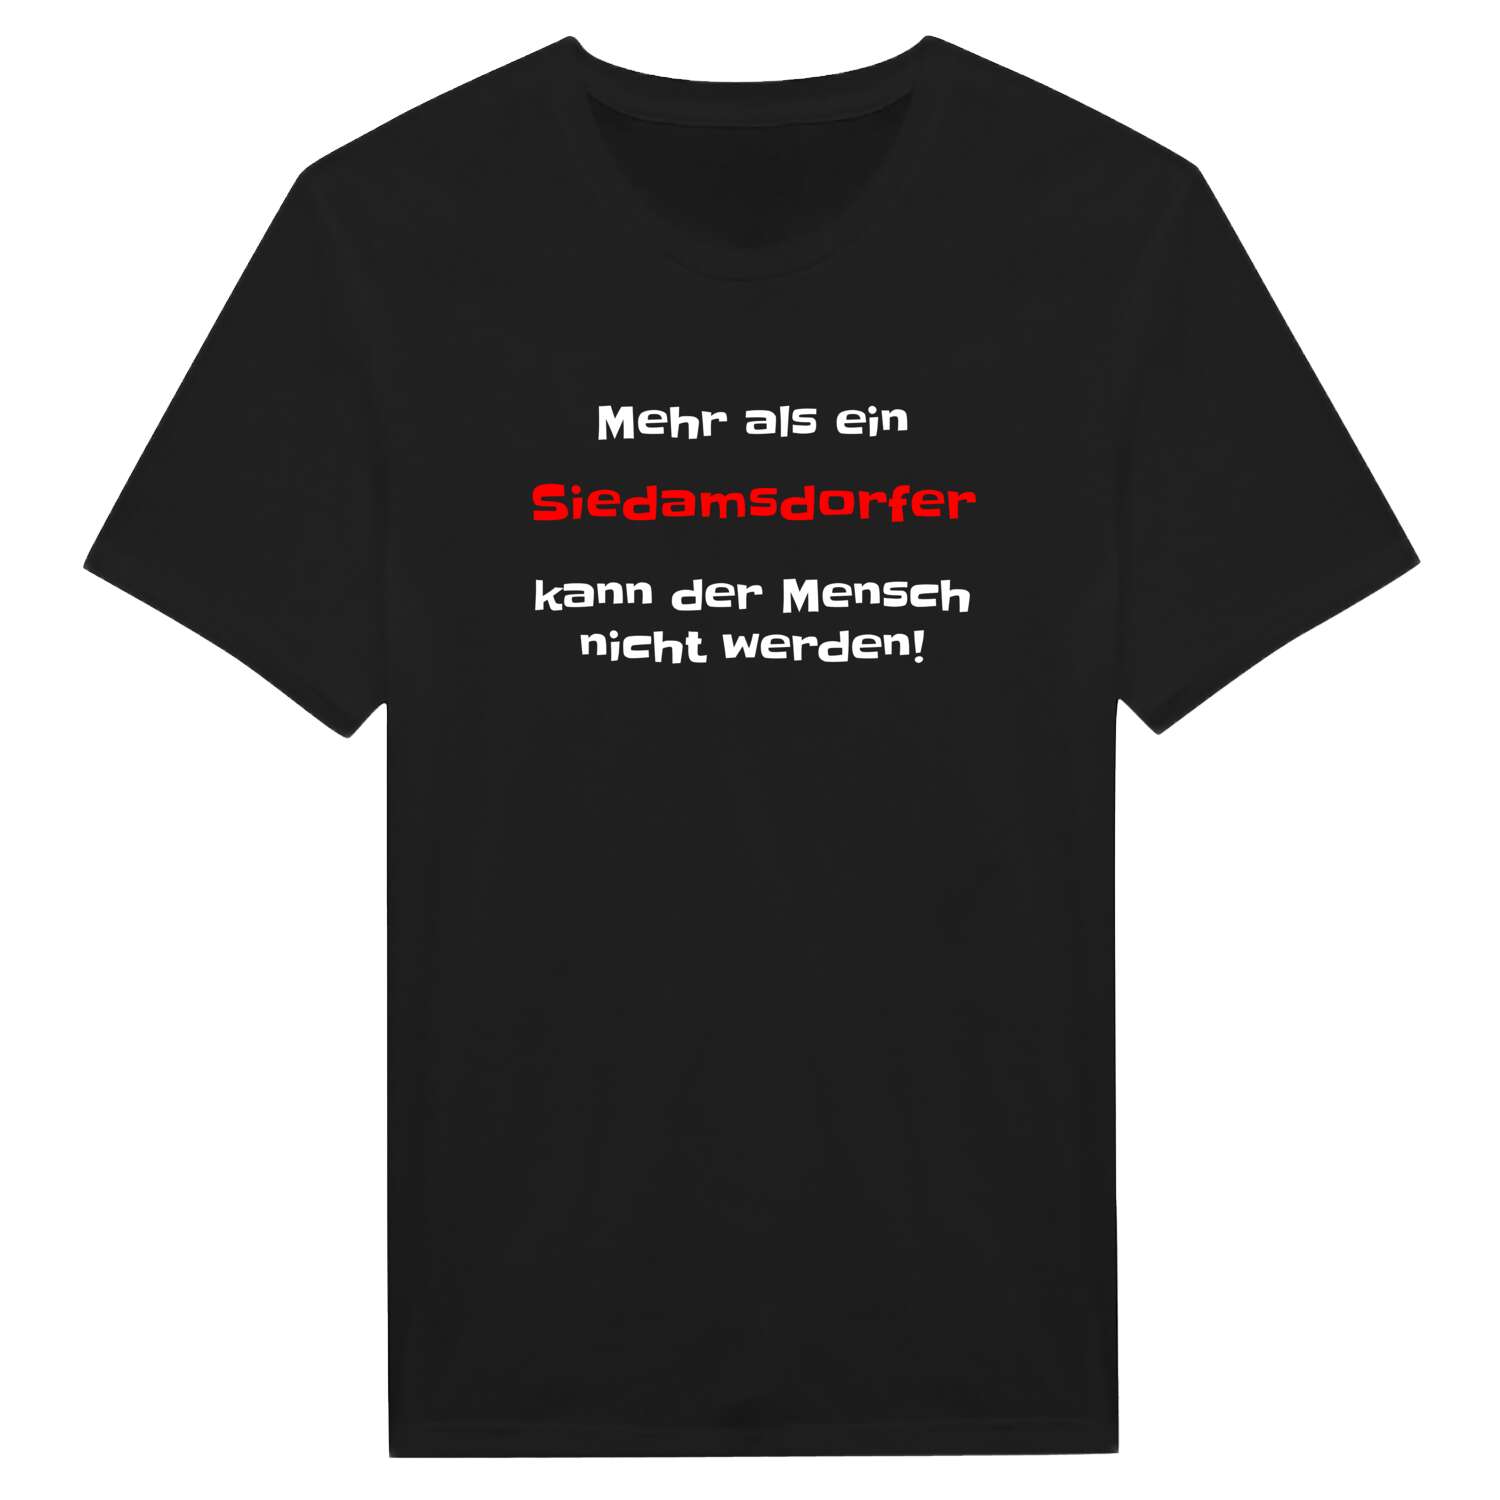 Siedamsdorf T-Shirt »Mehr als ein«